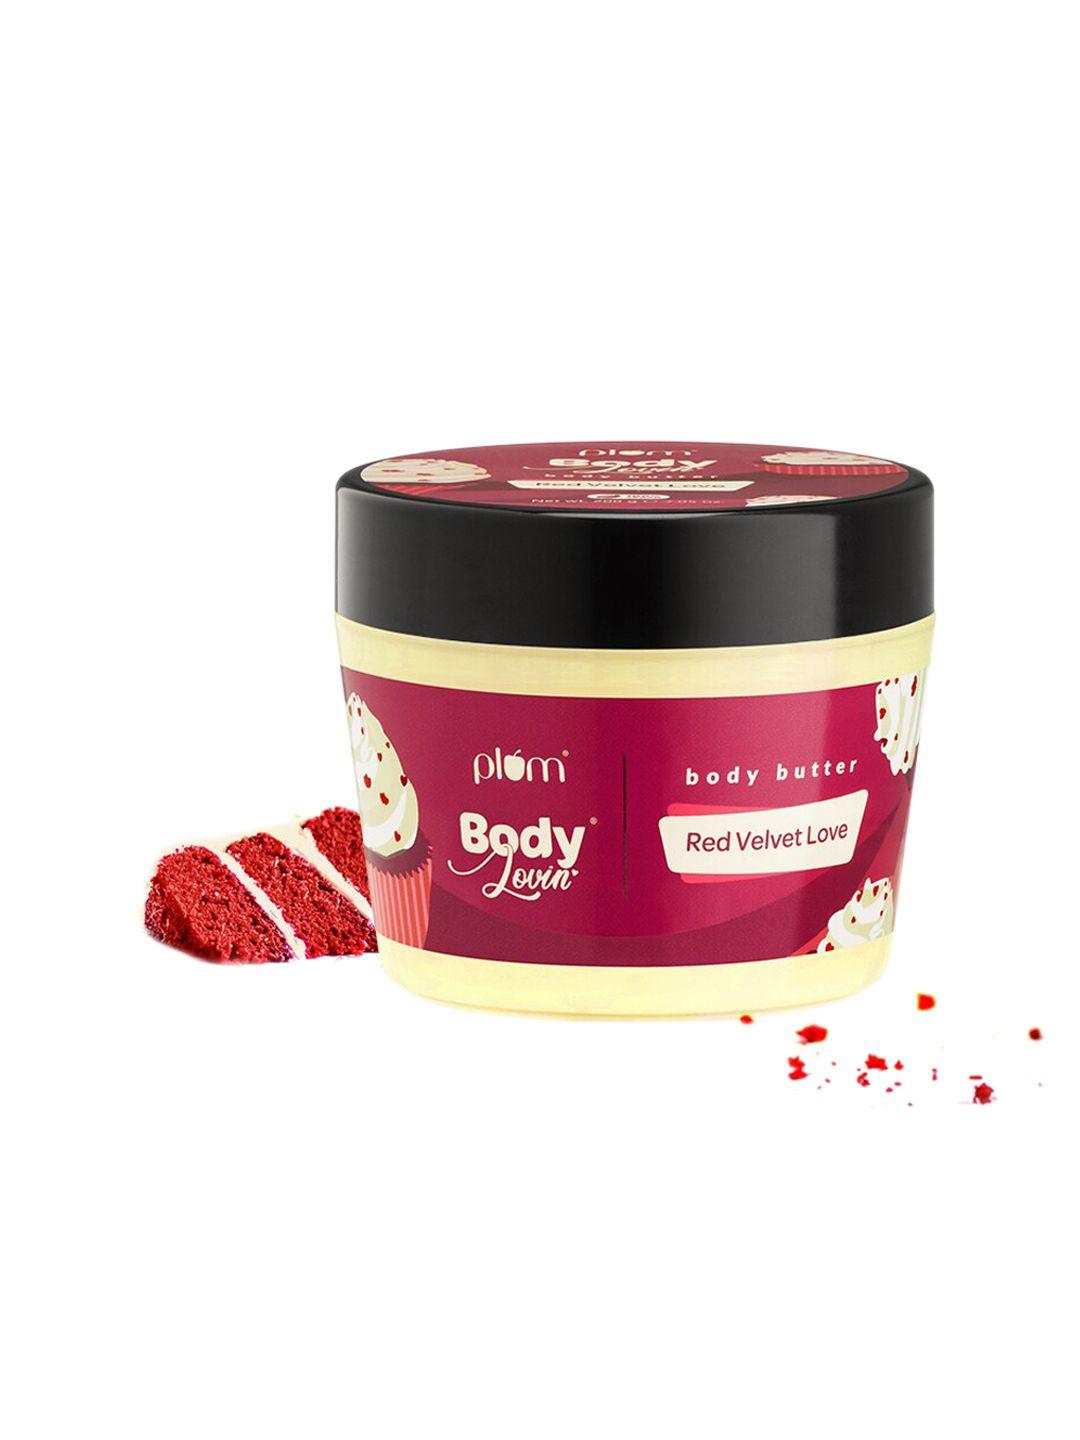 plum body lovin red velvet love body butter - 200 g